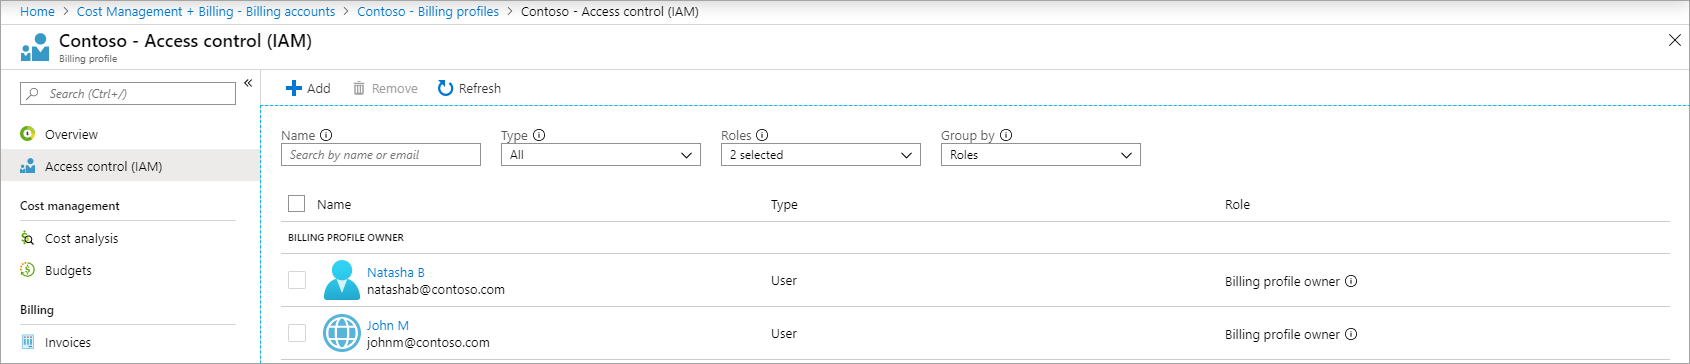 Captura de pantalla que muestra el acceso de los administradores de Enterprise que se enumeran como propietarios del perfil de facturación después de la transición.